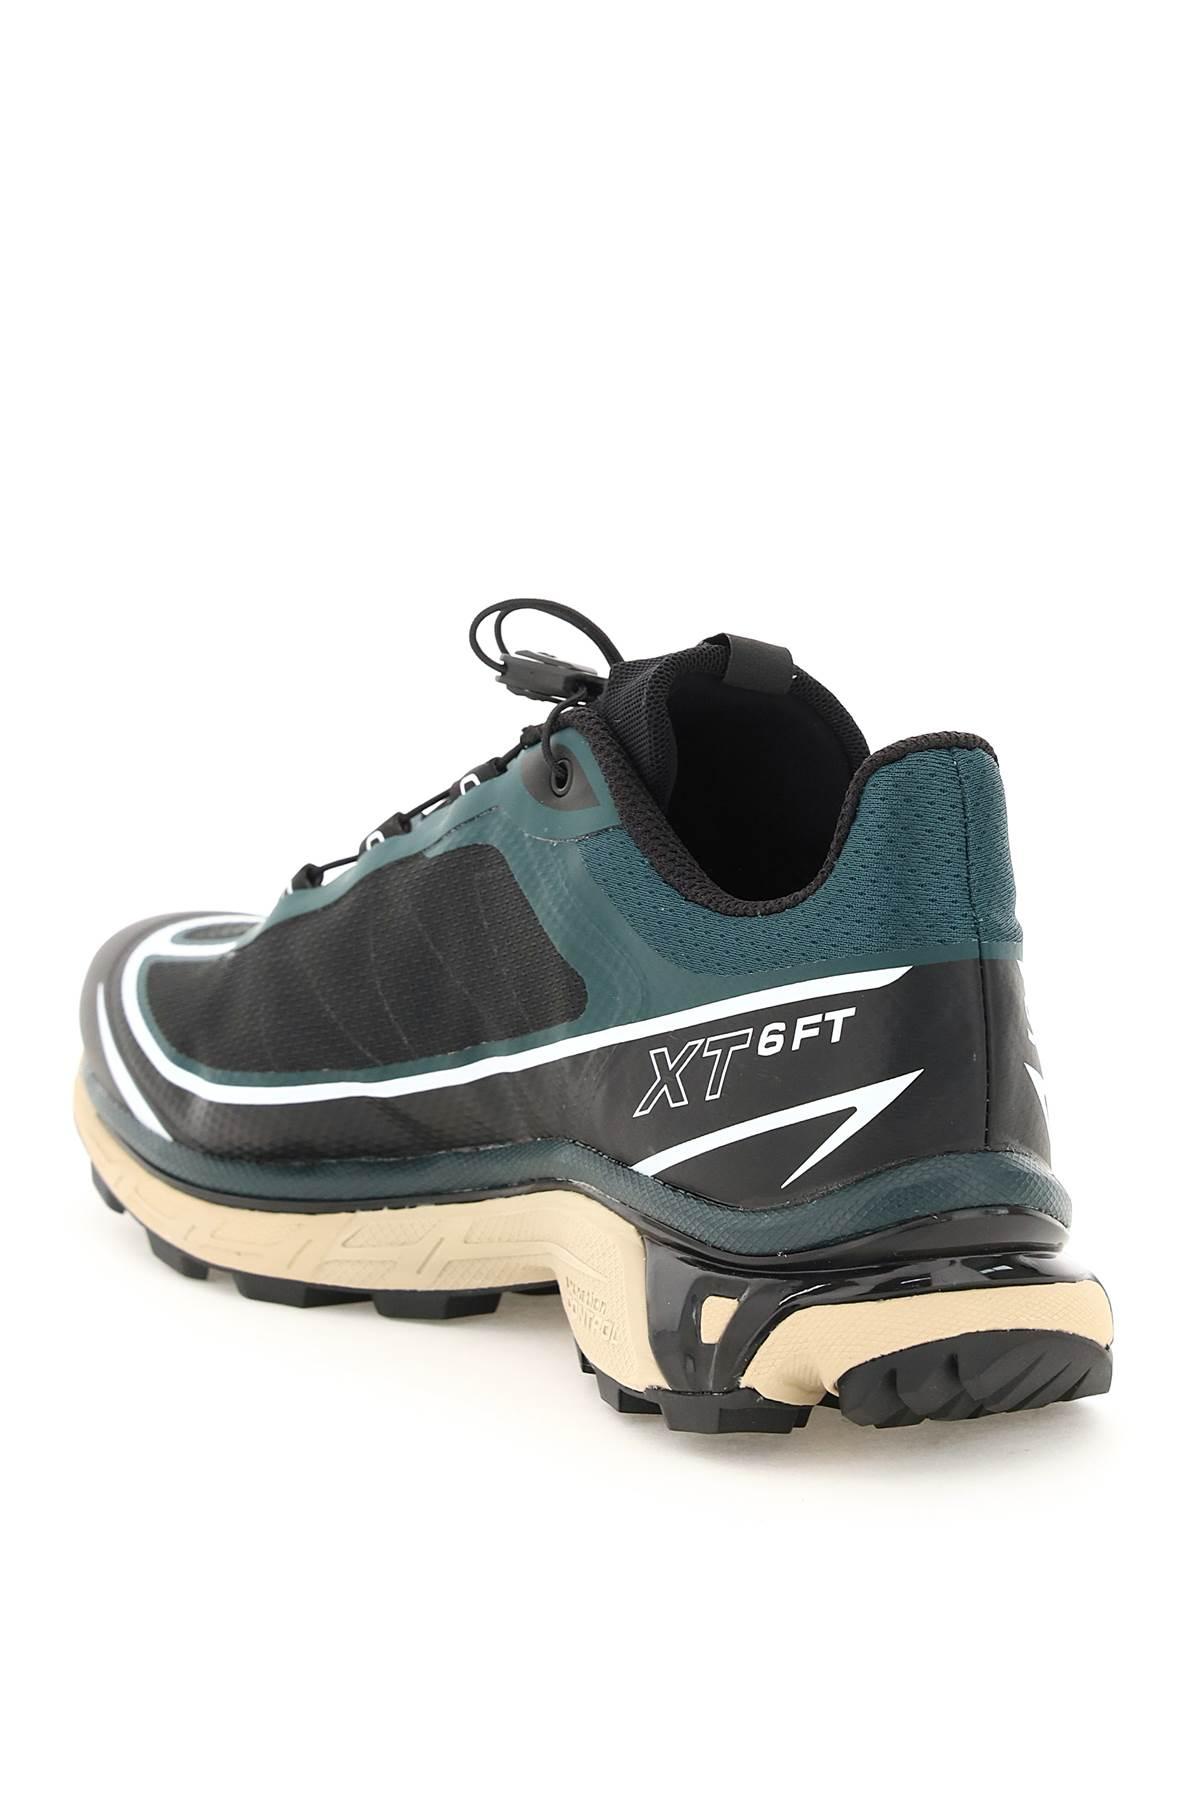 Salomon Xt-6 Ft Running Trail Shoes in Black for Men | Lyst